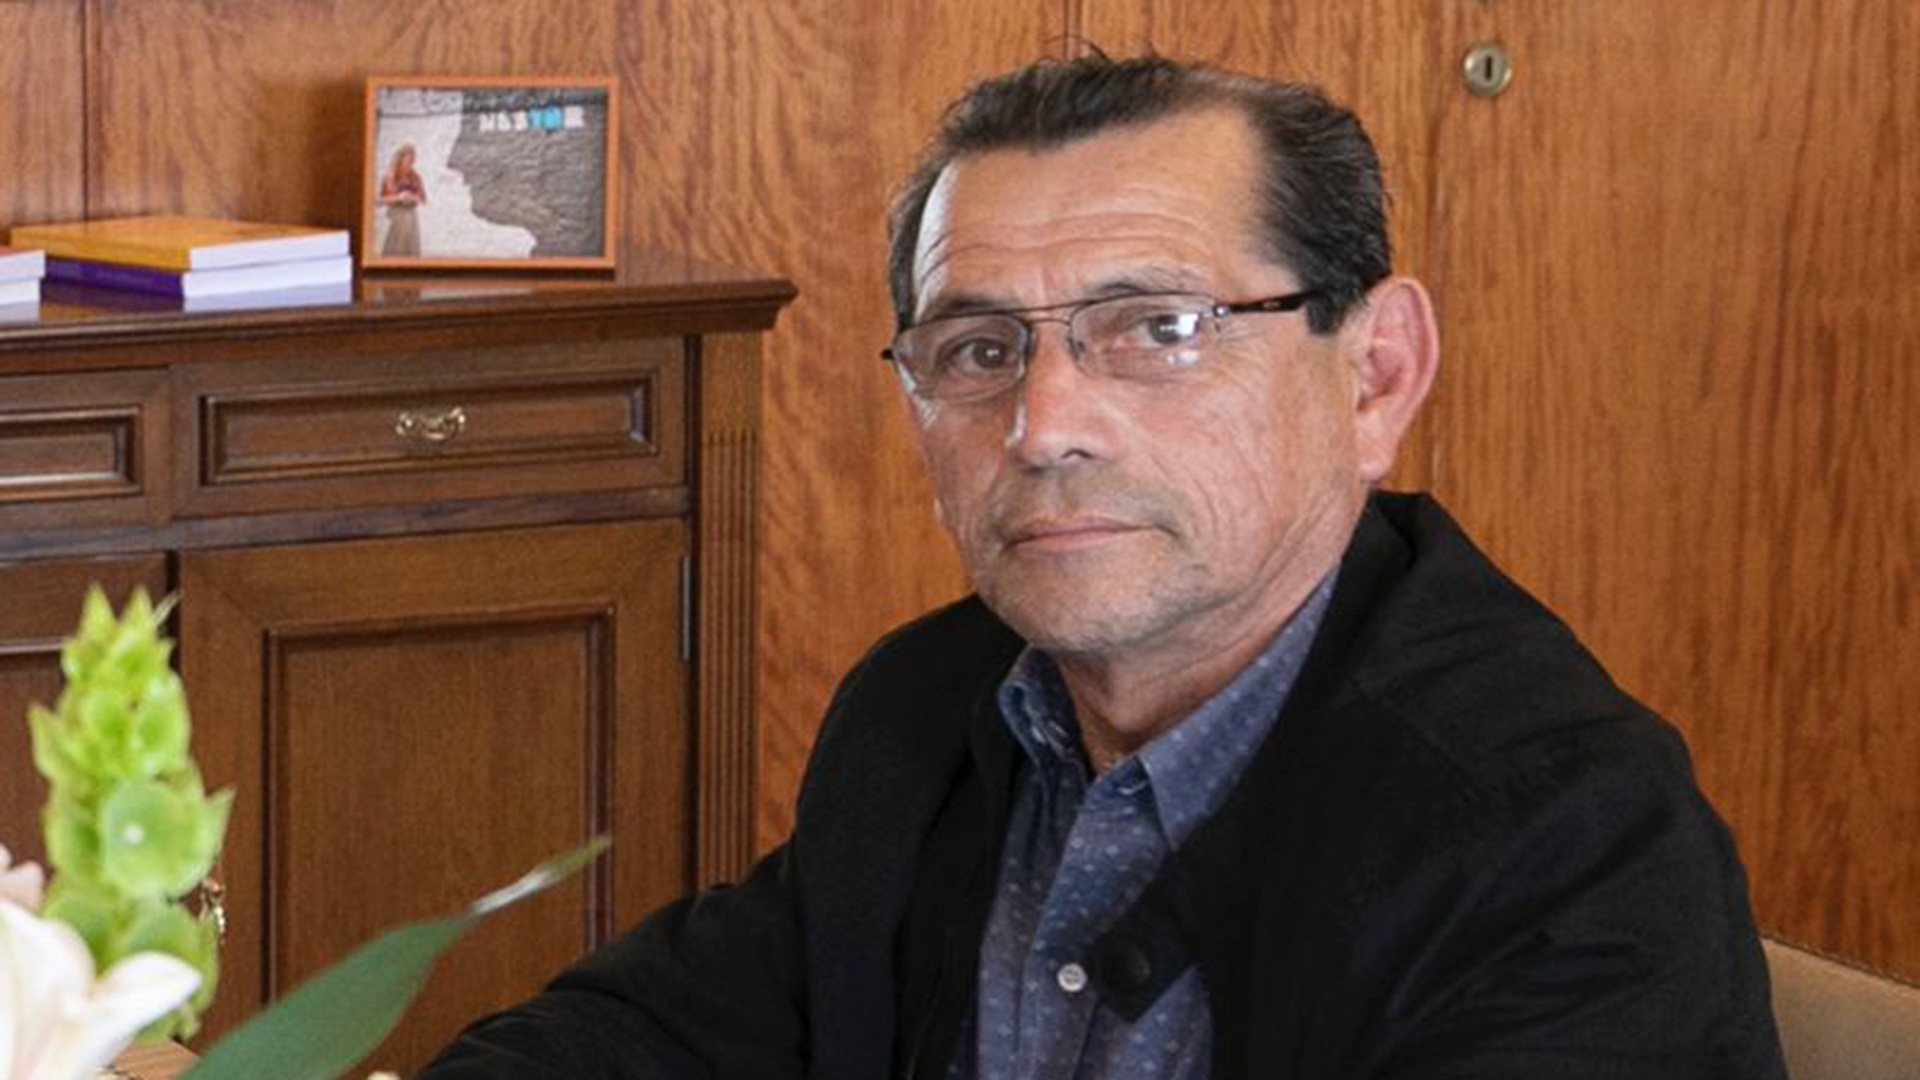 Exclusivo: la autopsia al ministro de Catamarca que cuestionan sus hijos y las dudas que aún hay sobre su muerte